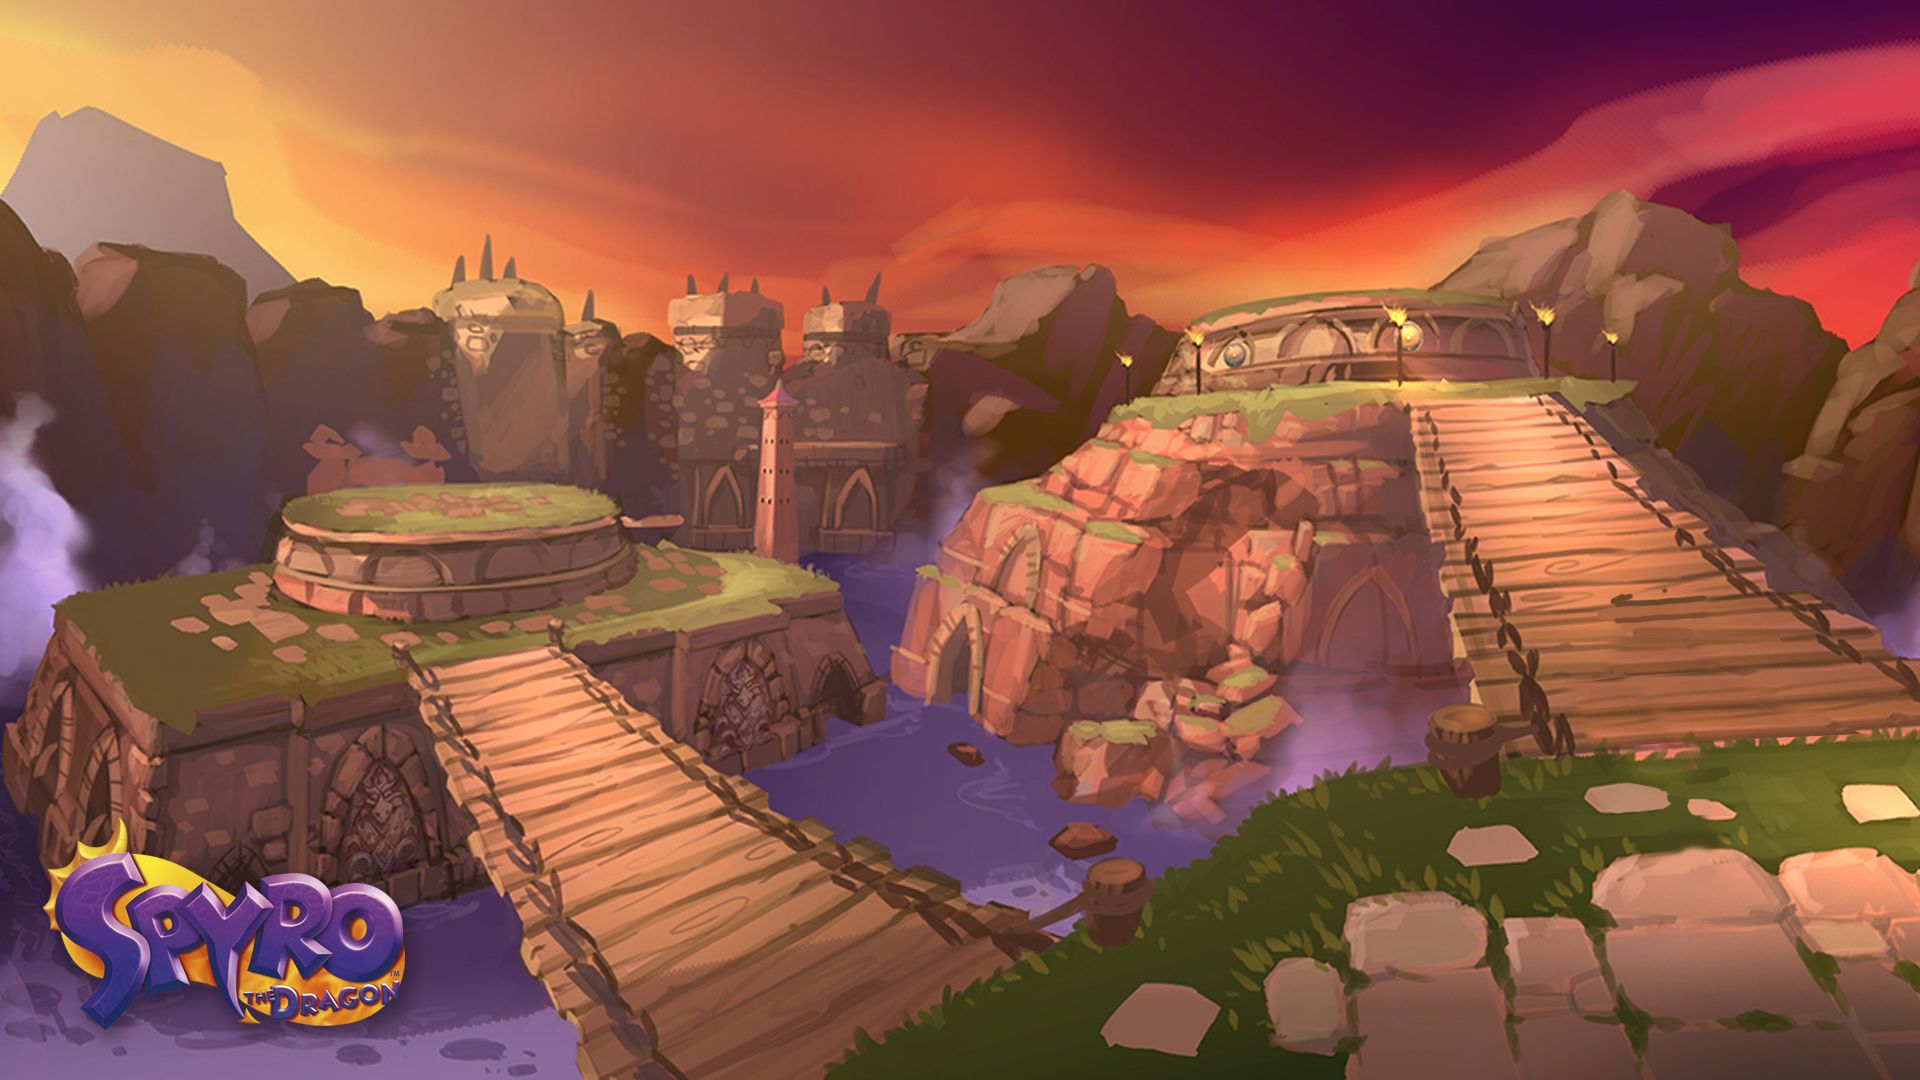 Скачать обои бесплатно Видеоигры, Трилогия Spyro Reignited картинка на рабочий стол ПК